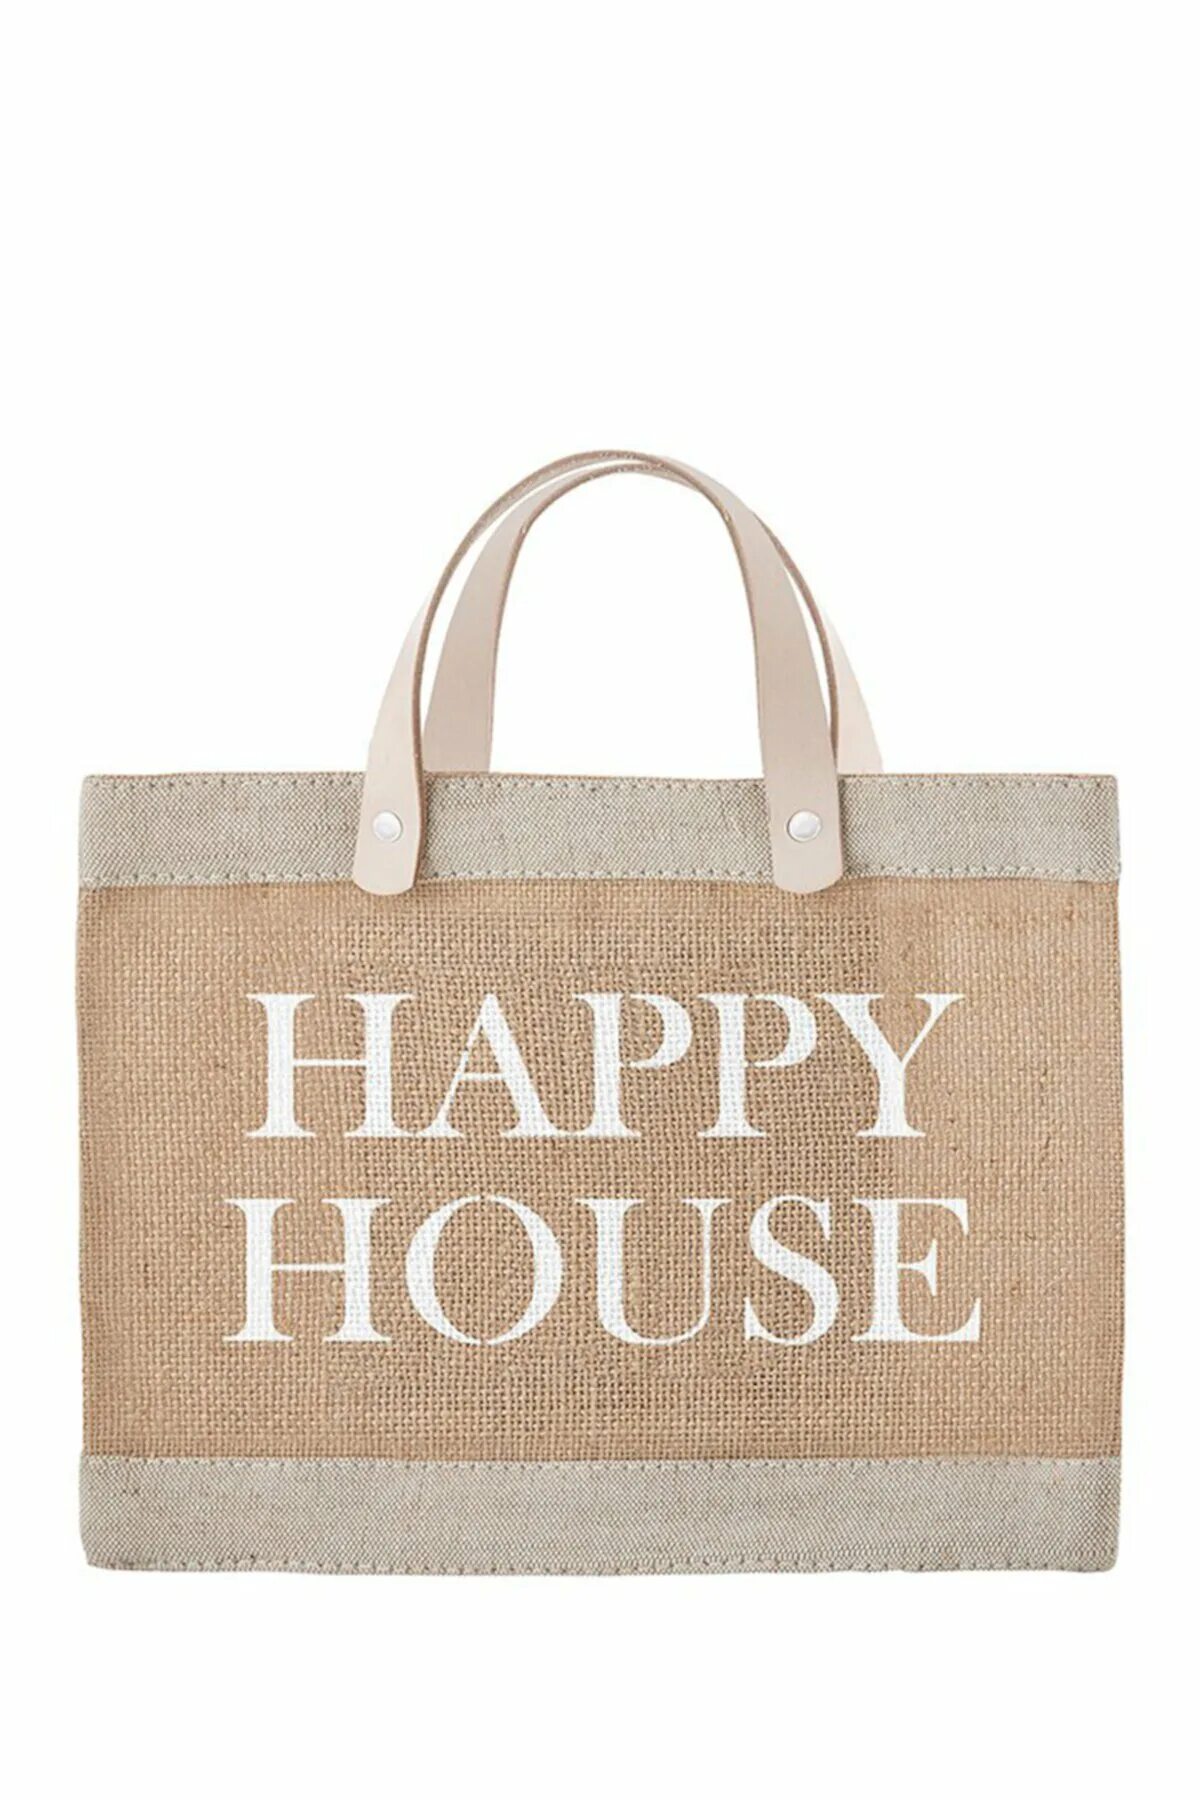 Сумка House. Пакет Happy House. Хэппи Хаус сумка. Сумка House brand. Товар хэппи